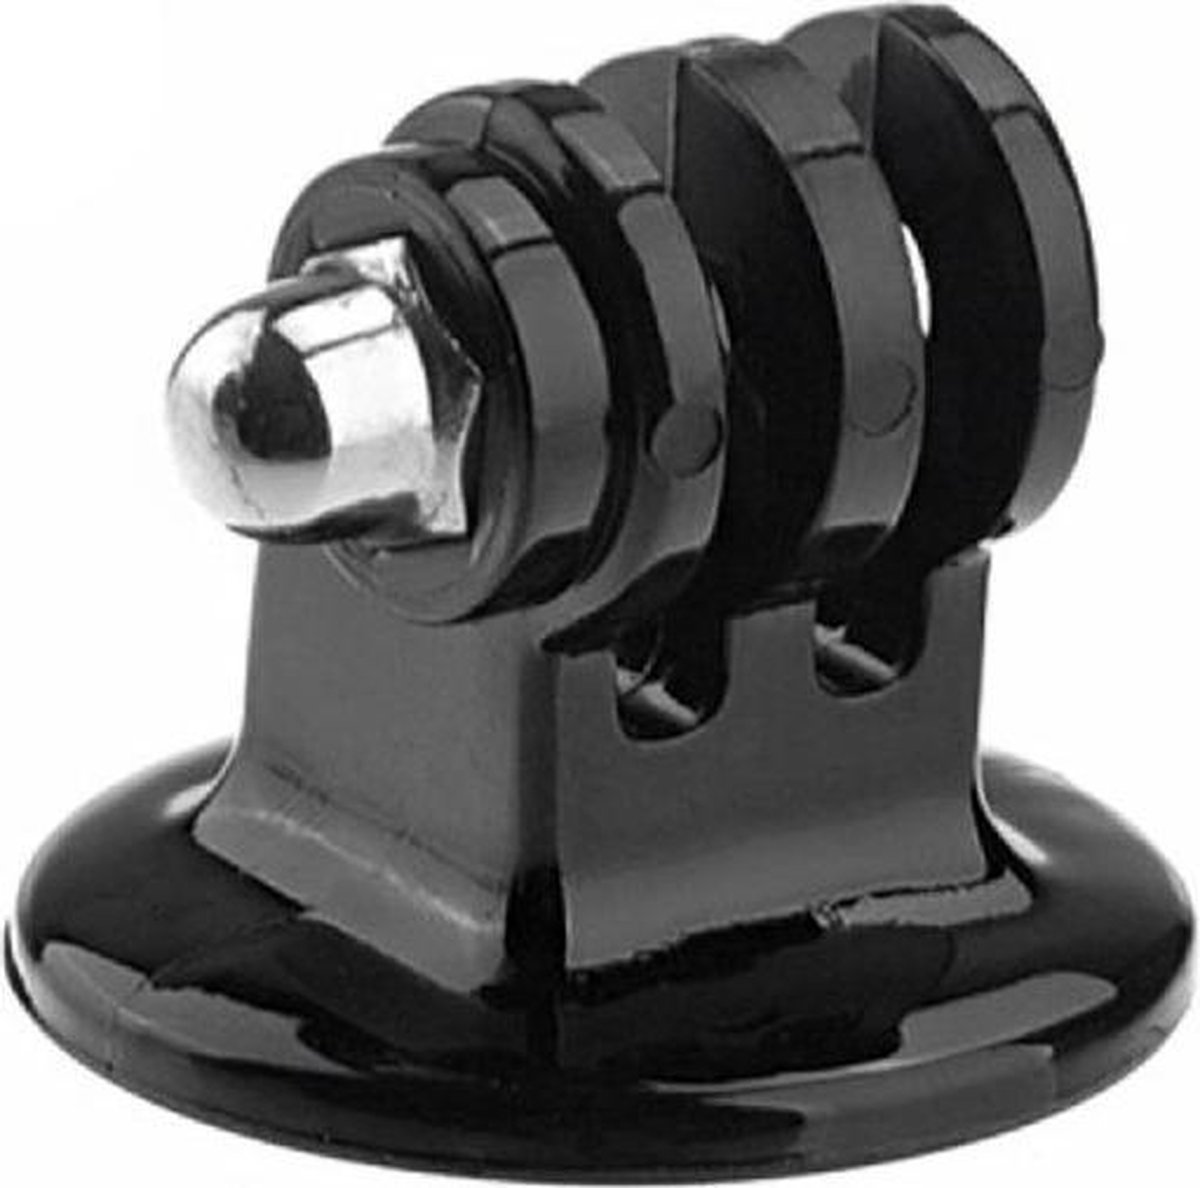 Tripod mount adapter met GoPro aansluiting | bol.com